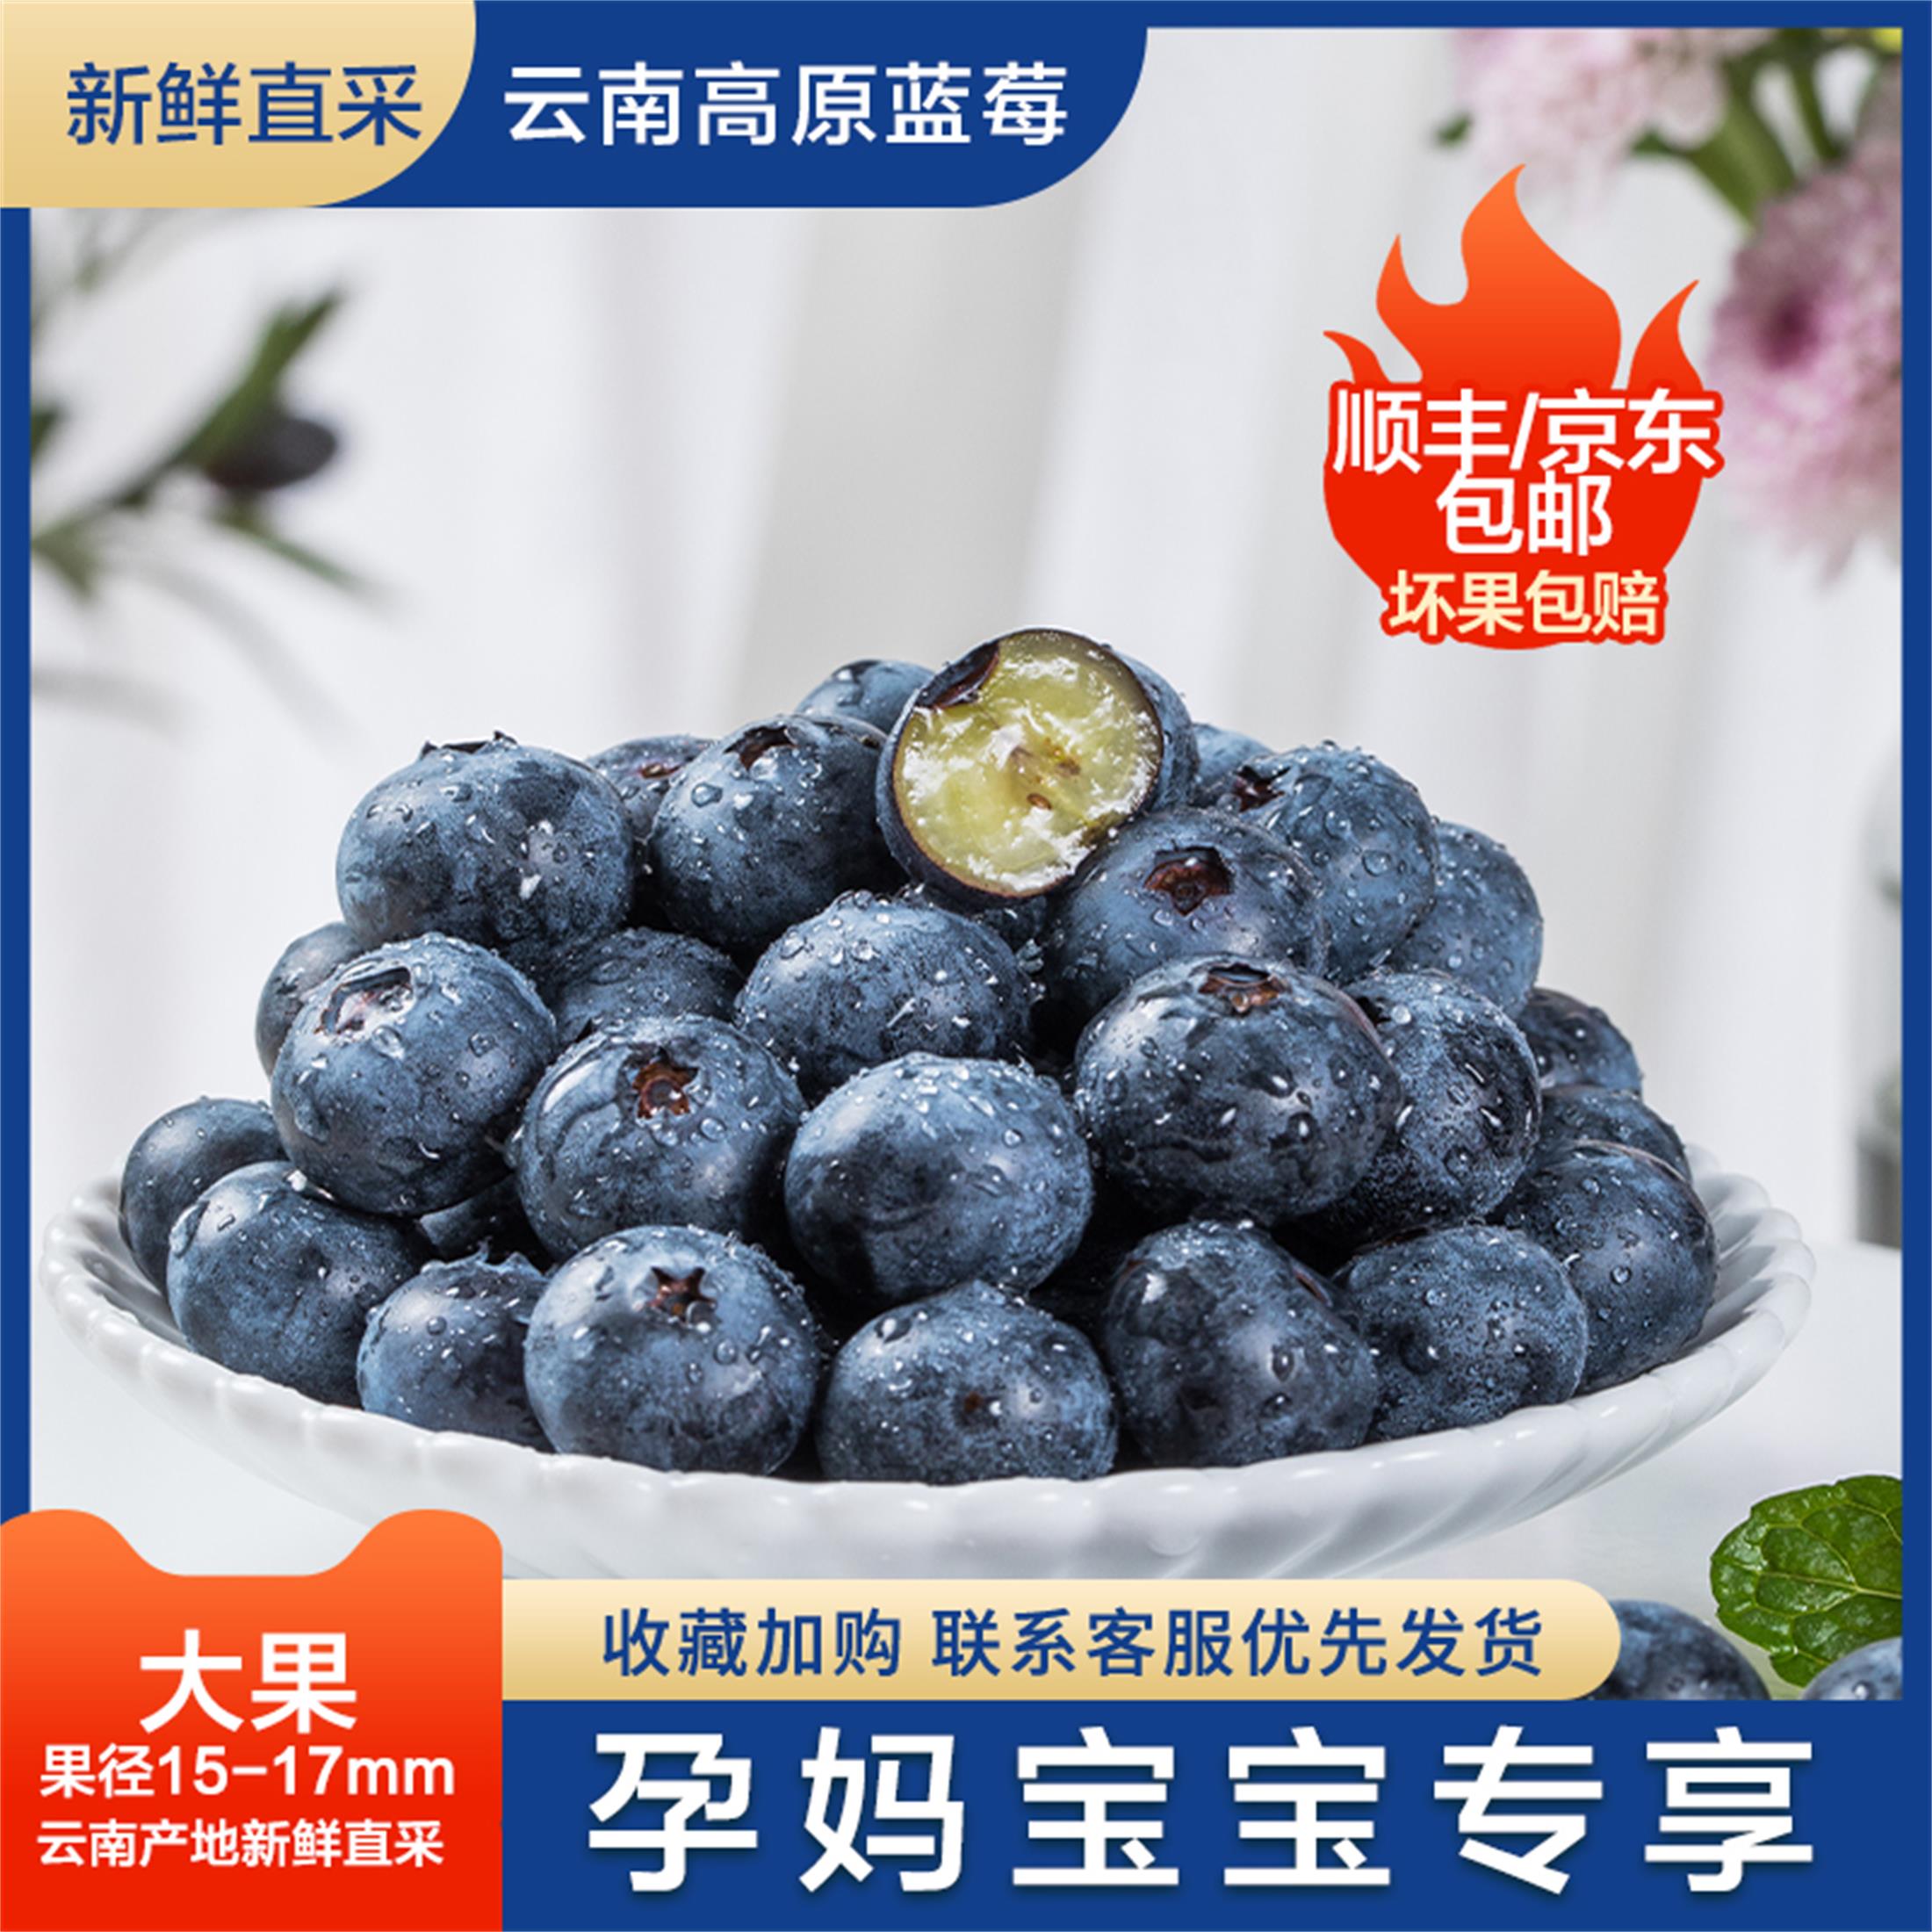 云南高原露天蓝莓当季新鲜孕妇水果基地直采怡颗甜蓝莓顺丰包邮